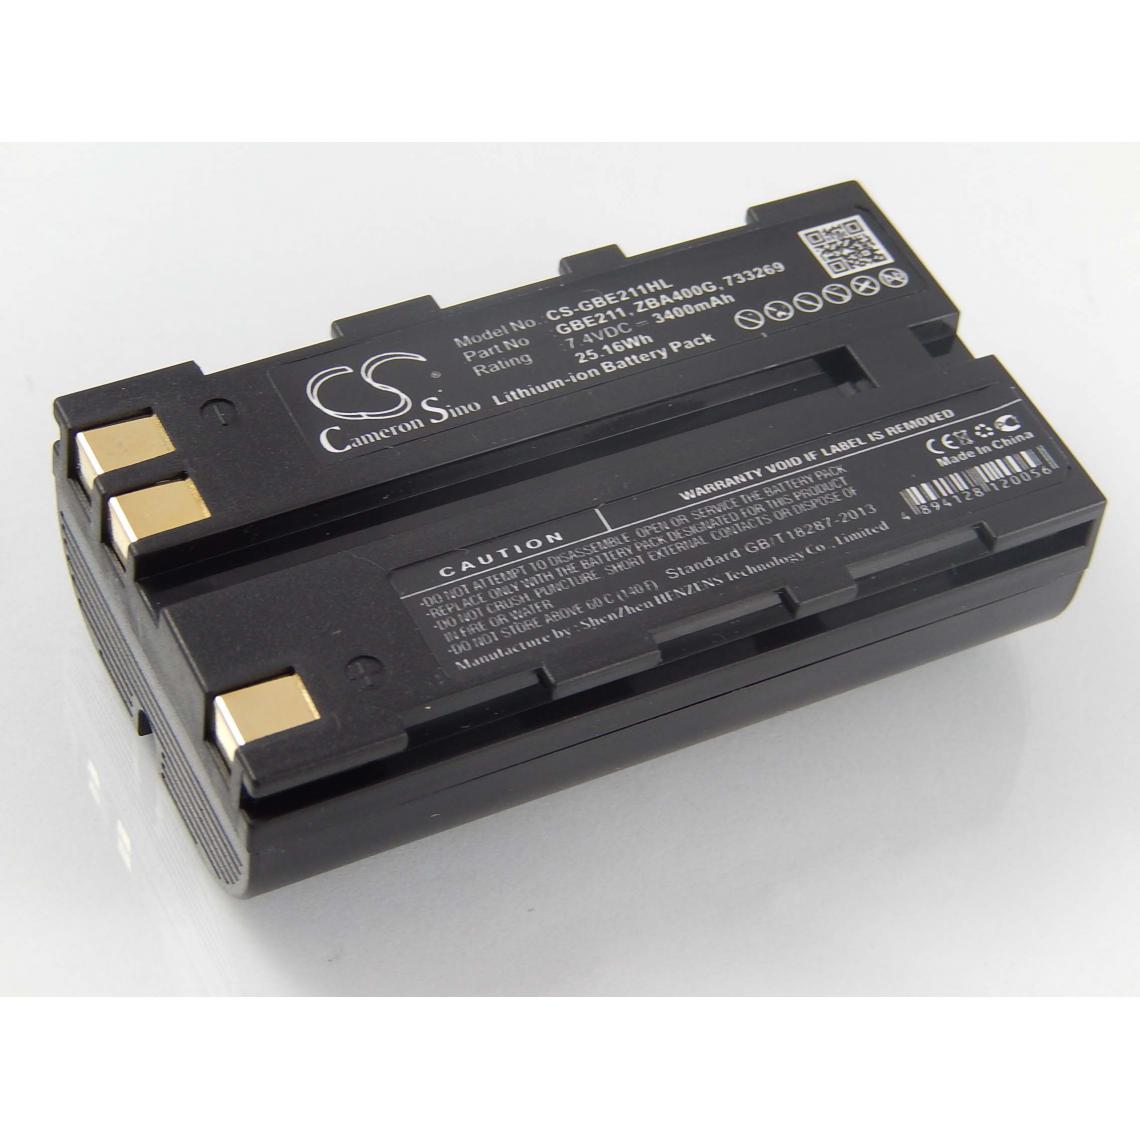 Vhbw - vhbw Batterie compatible avec Leica TCR805 Power, TPS1000 dispositif de mesure laser, outil de mesure (3400mAh, 7,4V, Li-ion) - Piles rechargeables